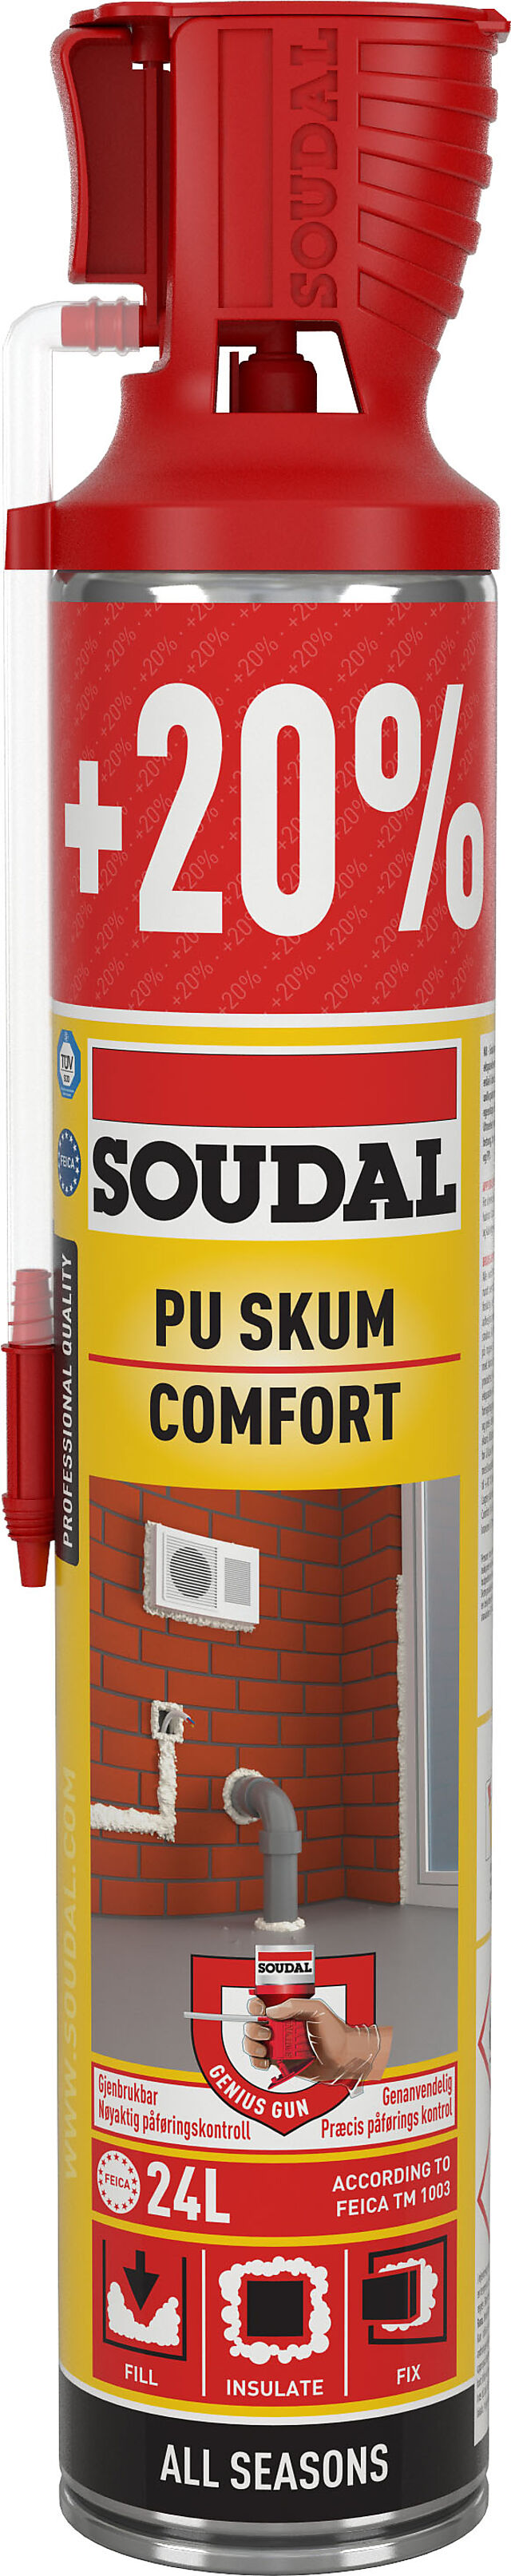 Soudal Soudal Comfort håndholdt skum 720 ml 1